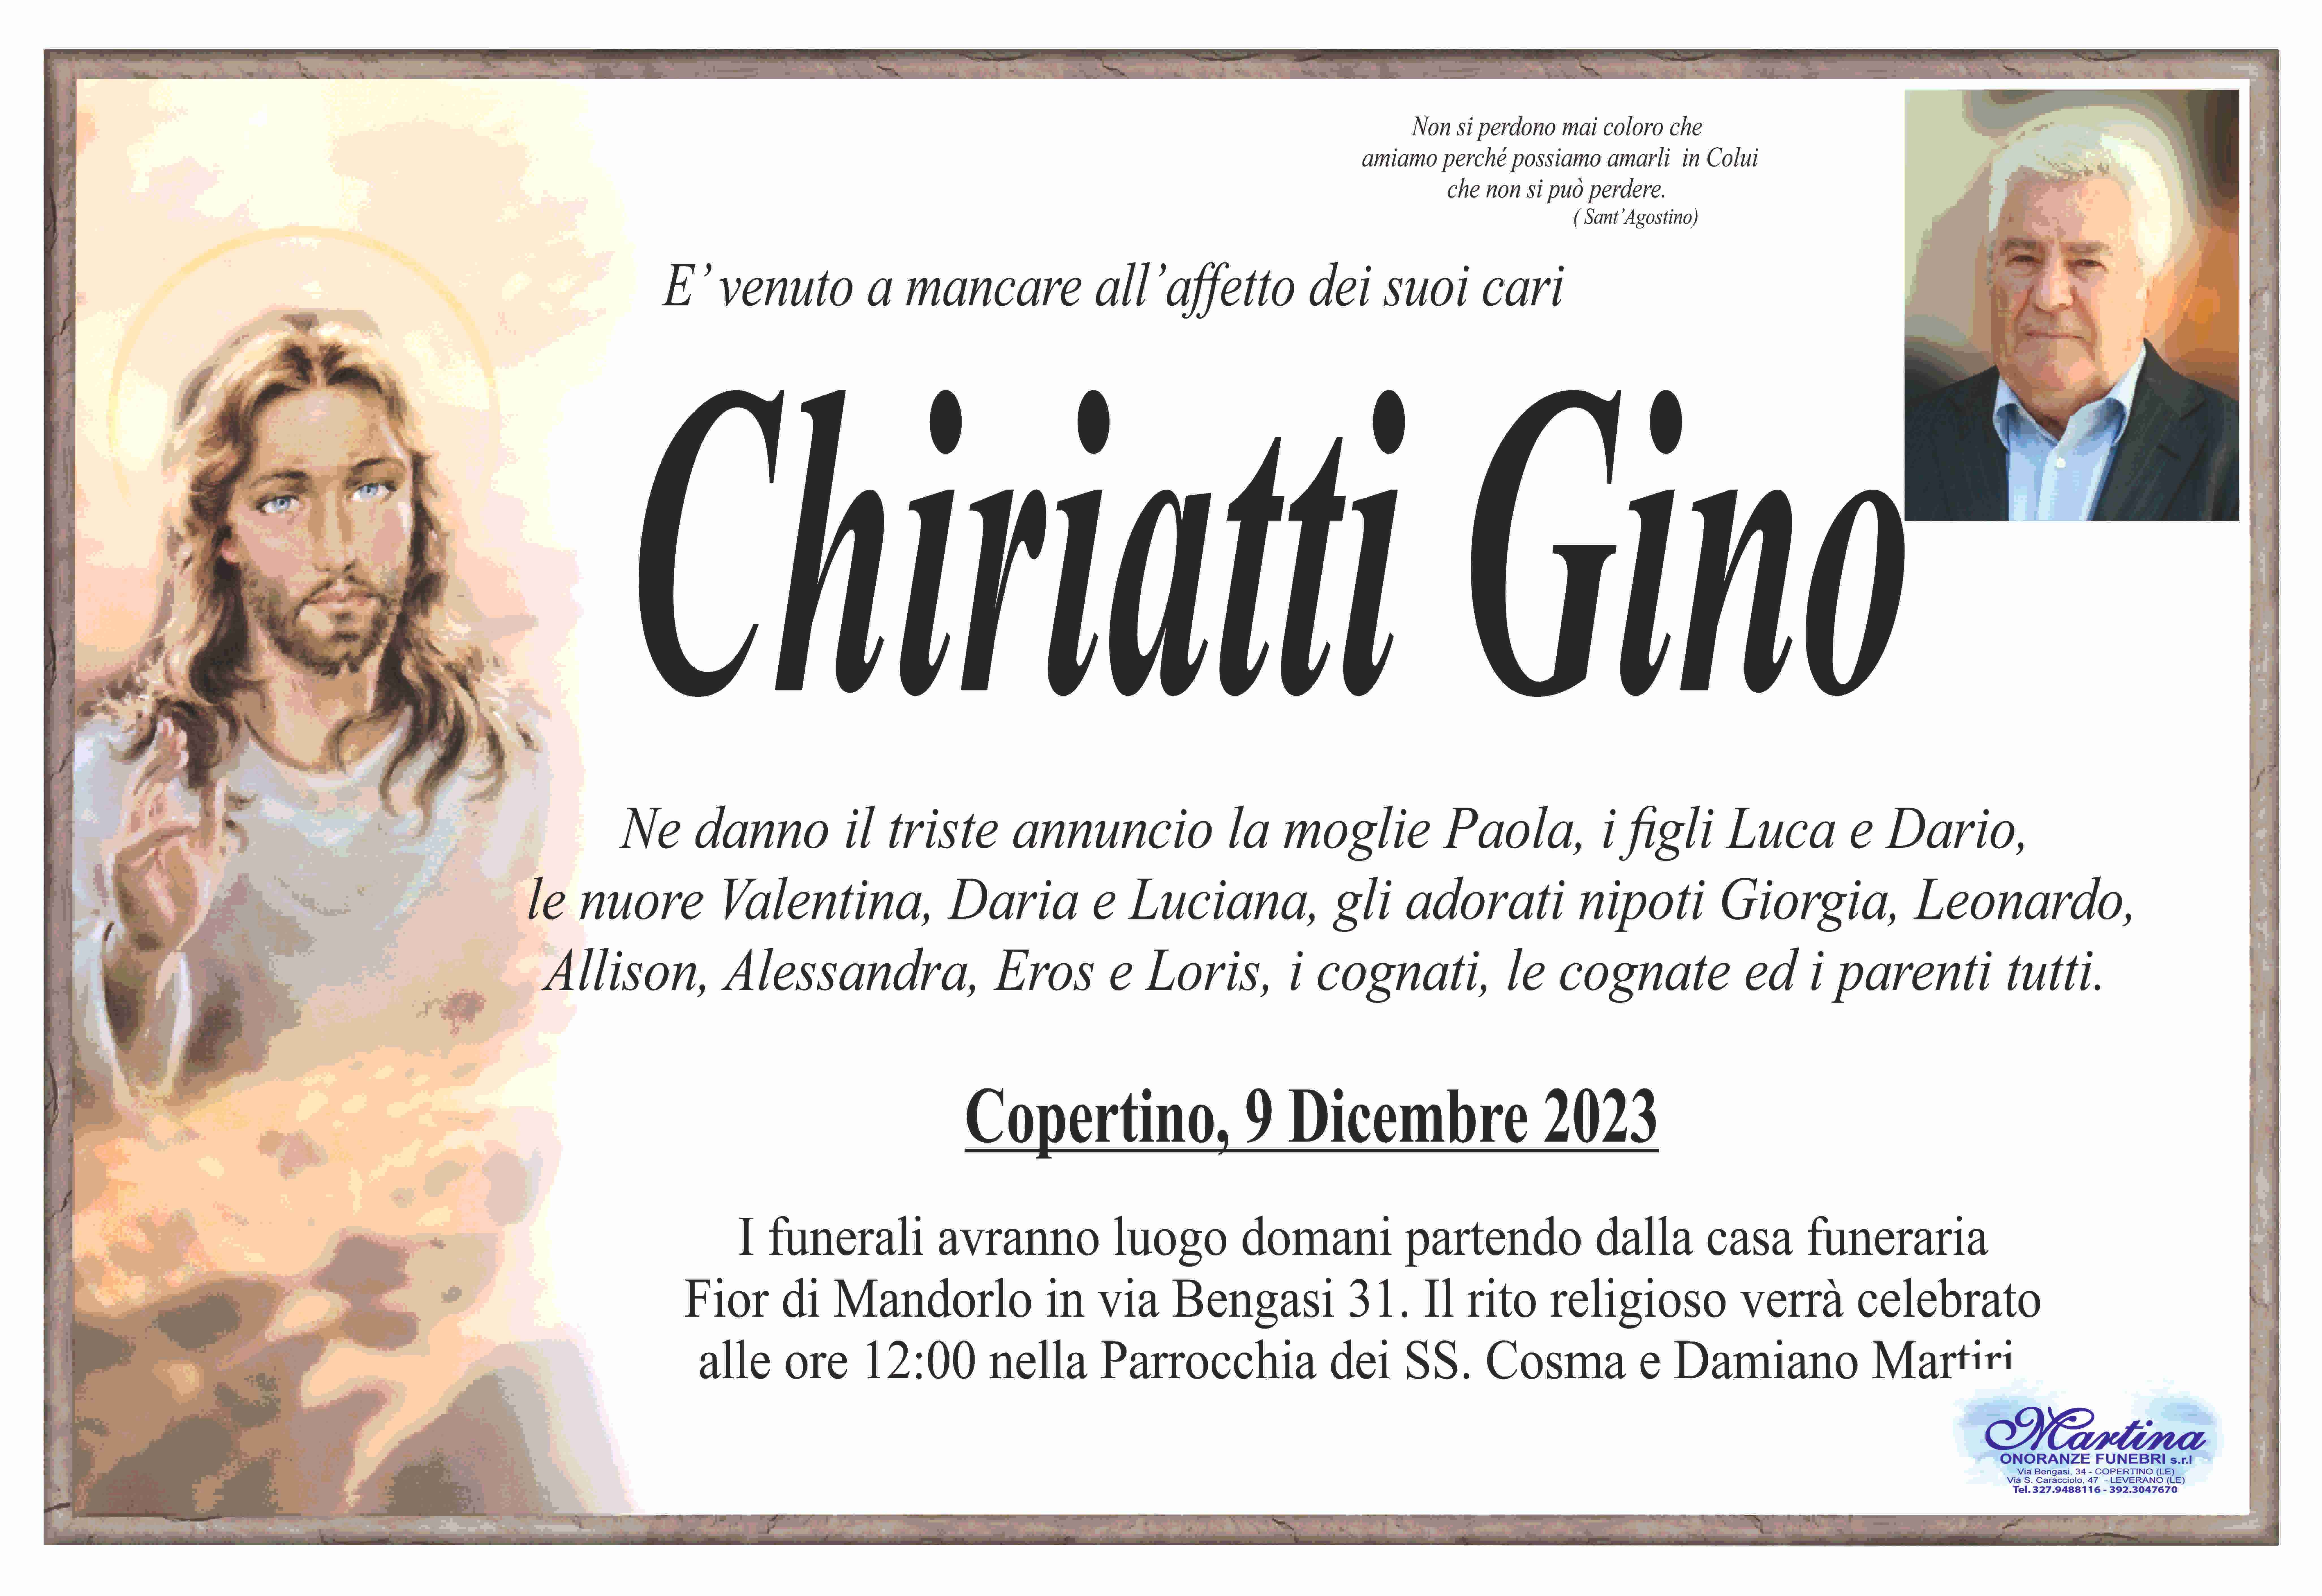 Gino Chiriatti